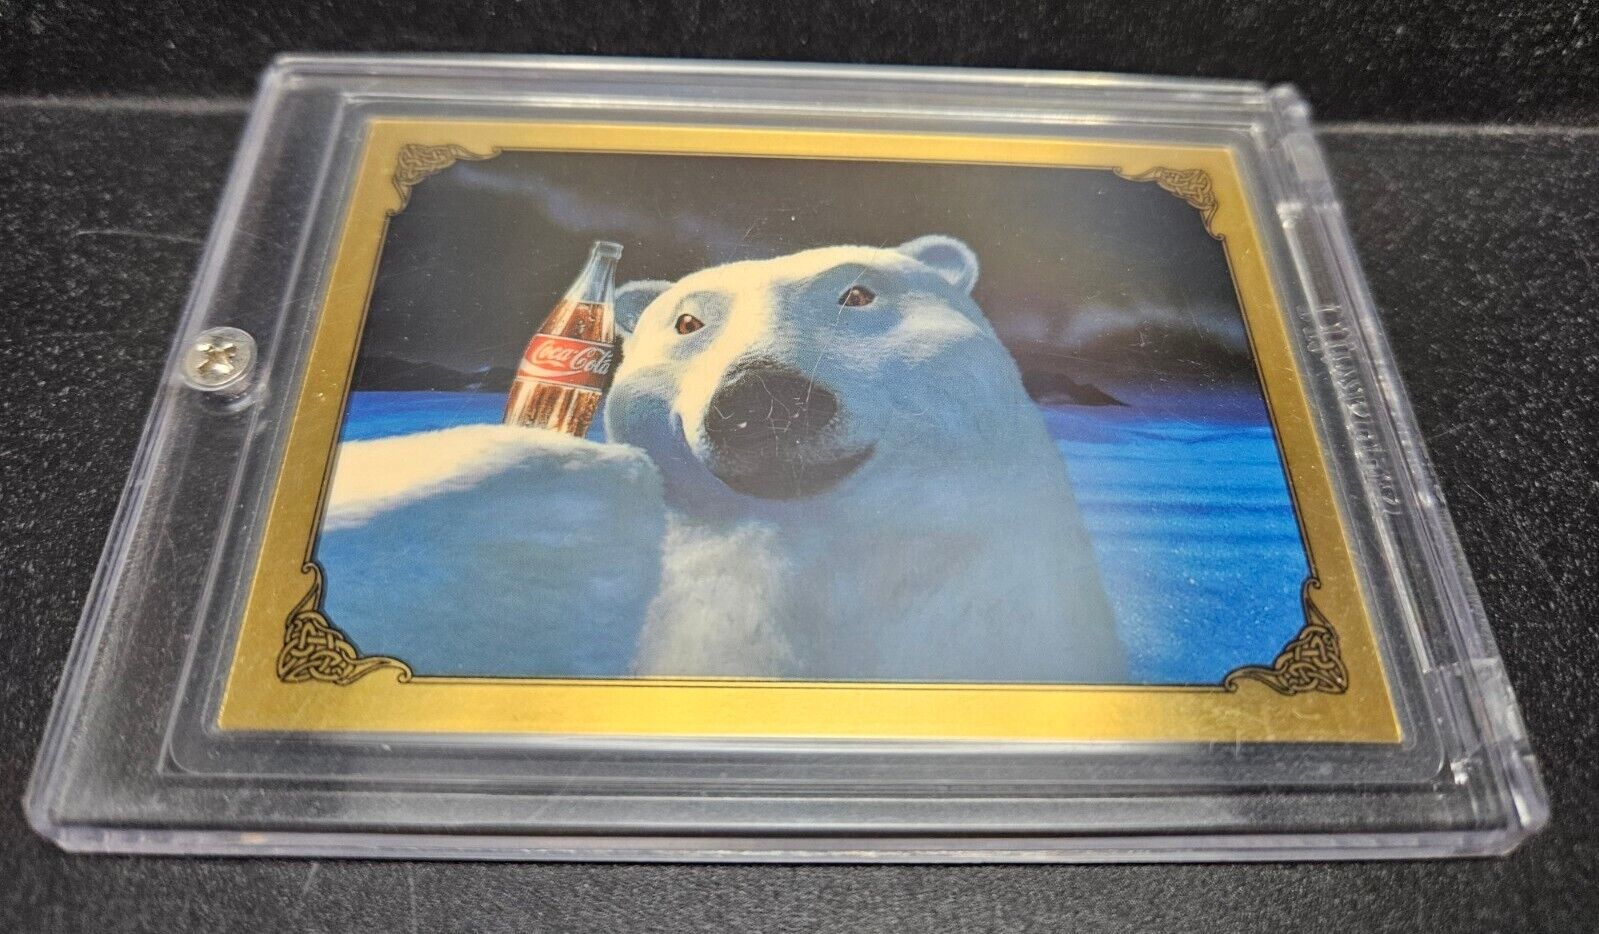 Coca-Cola Polar Bear 1g .9999 Fine Gold Card- Coca-Cola Collect-a-Card 1994. 